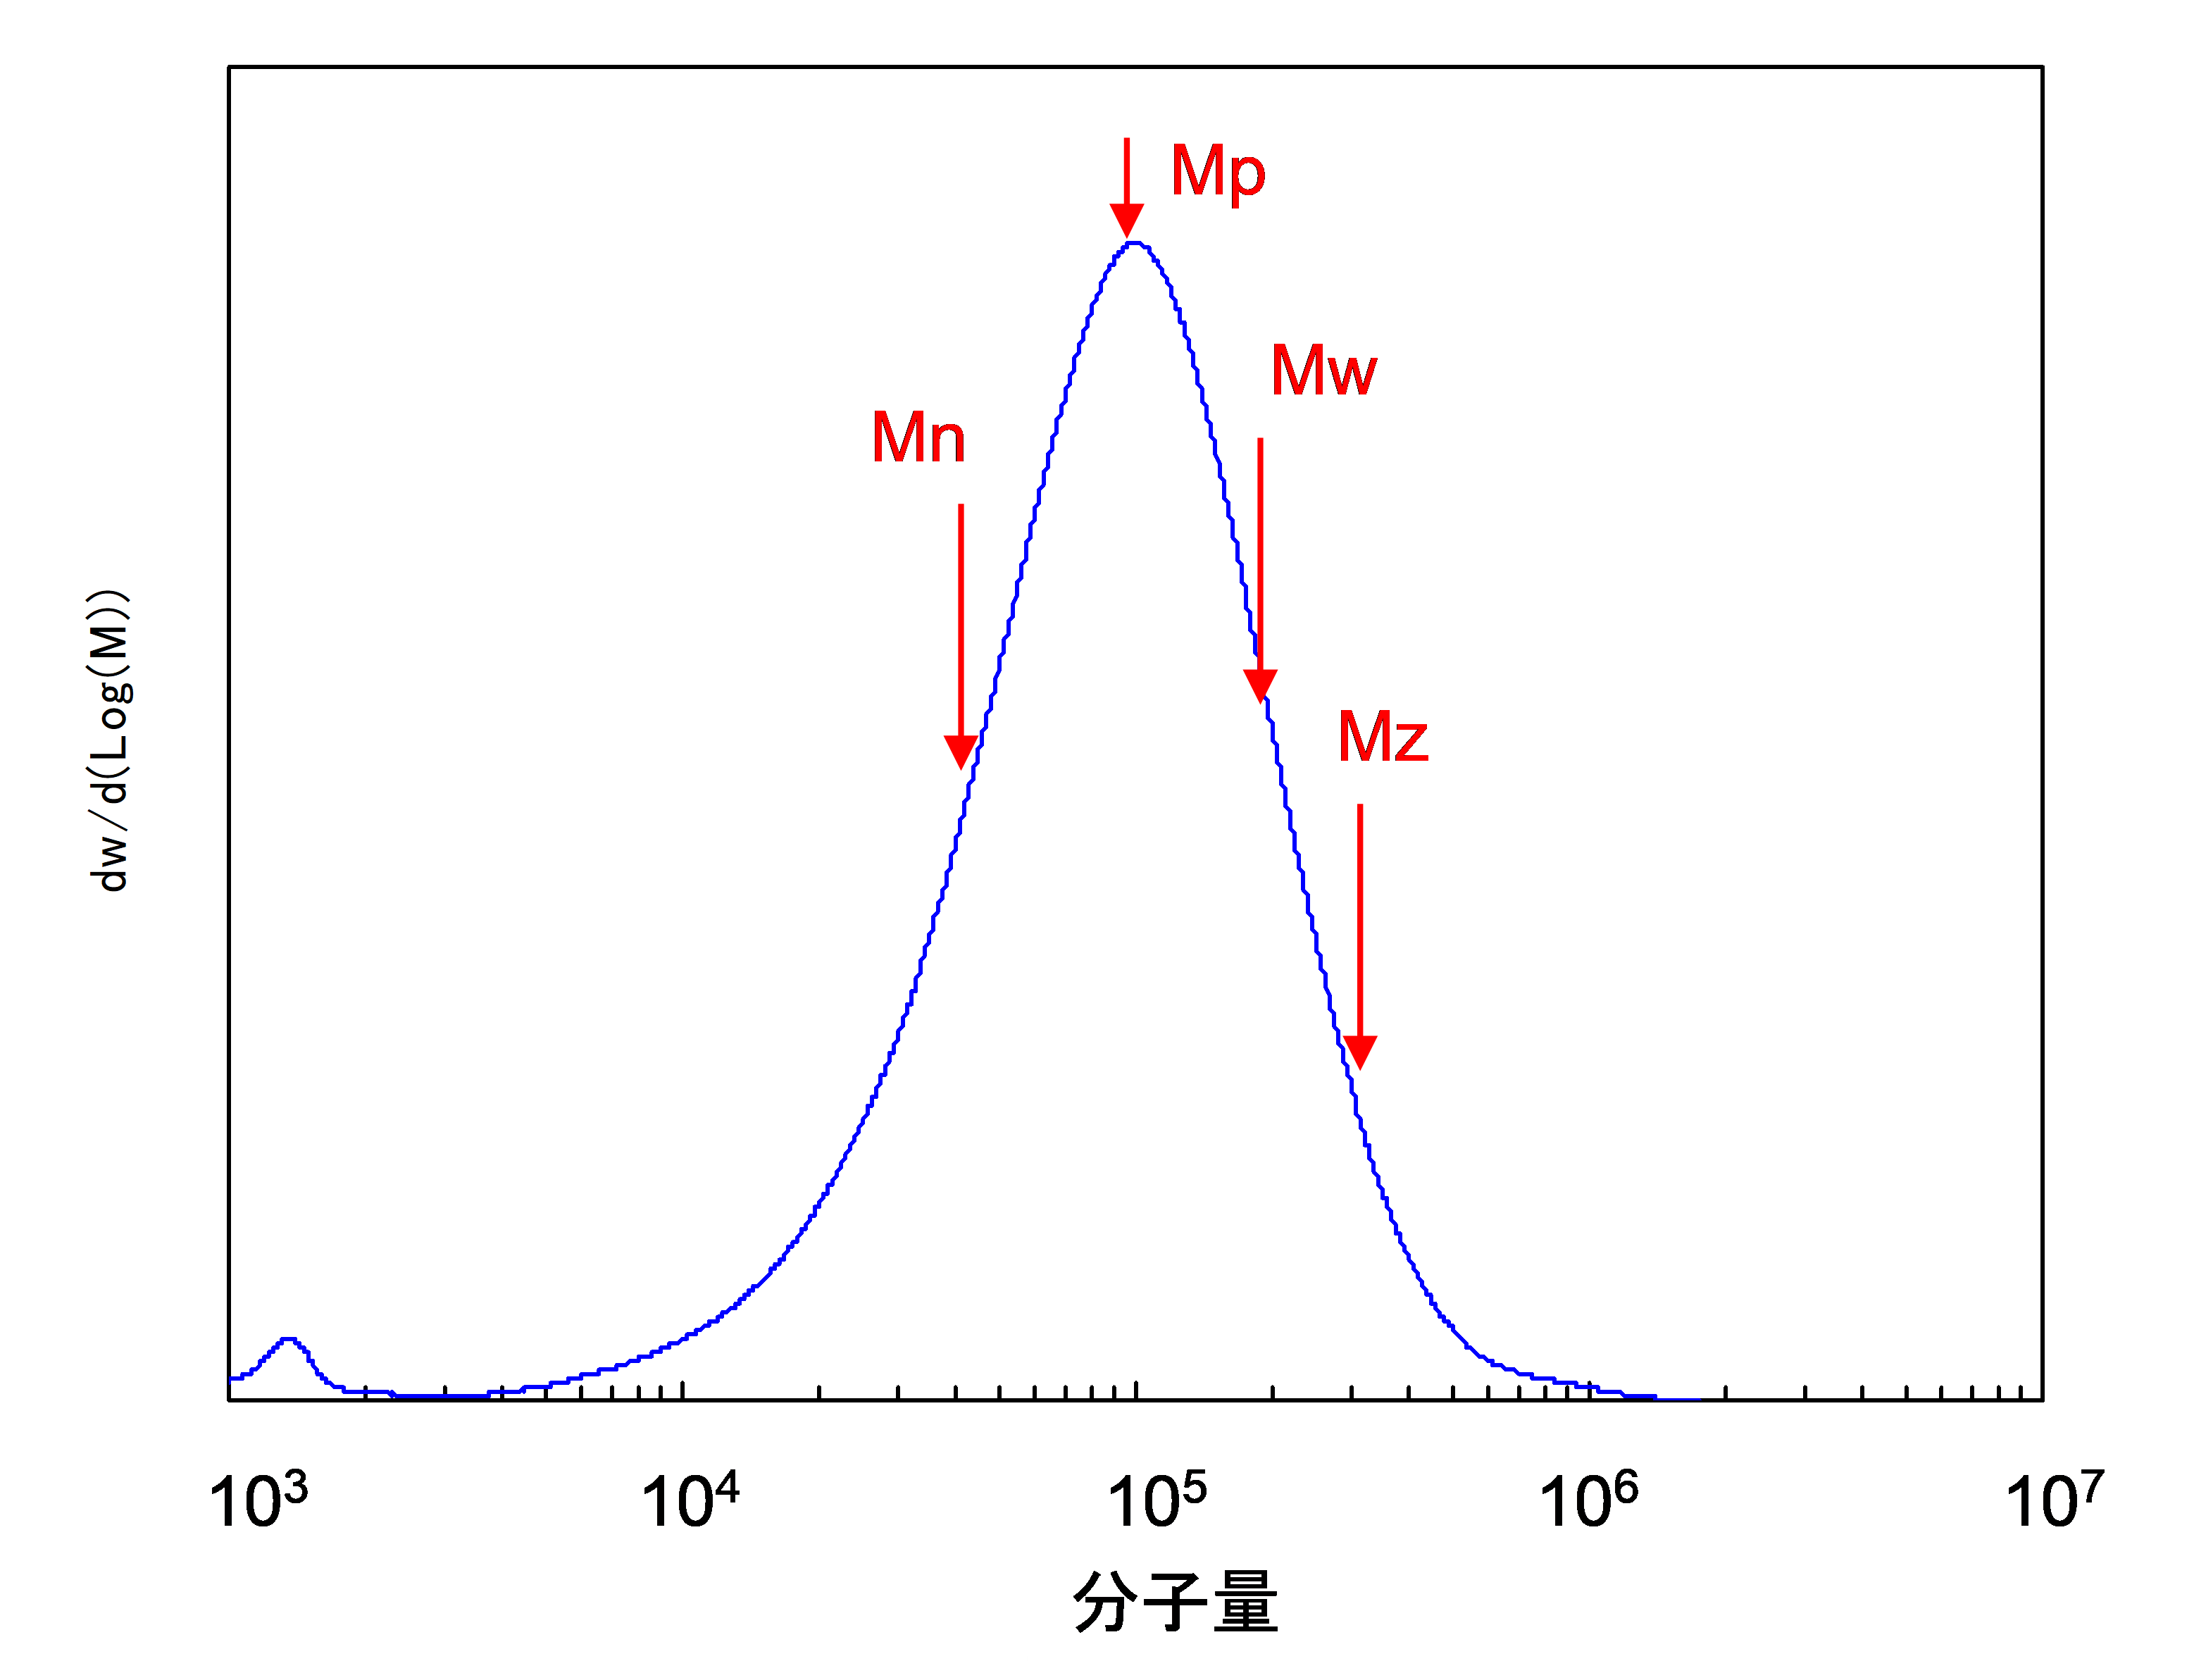 【図6】 分子量分布と平均分子量(例)
(Mpはピークトップ分子量を示す)
